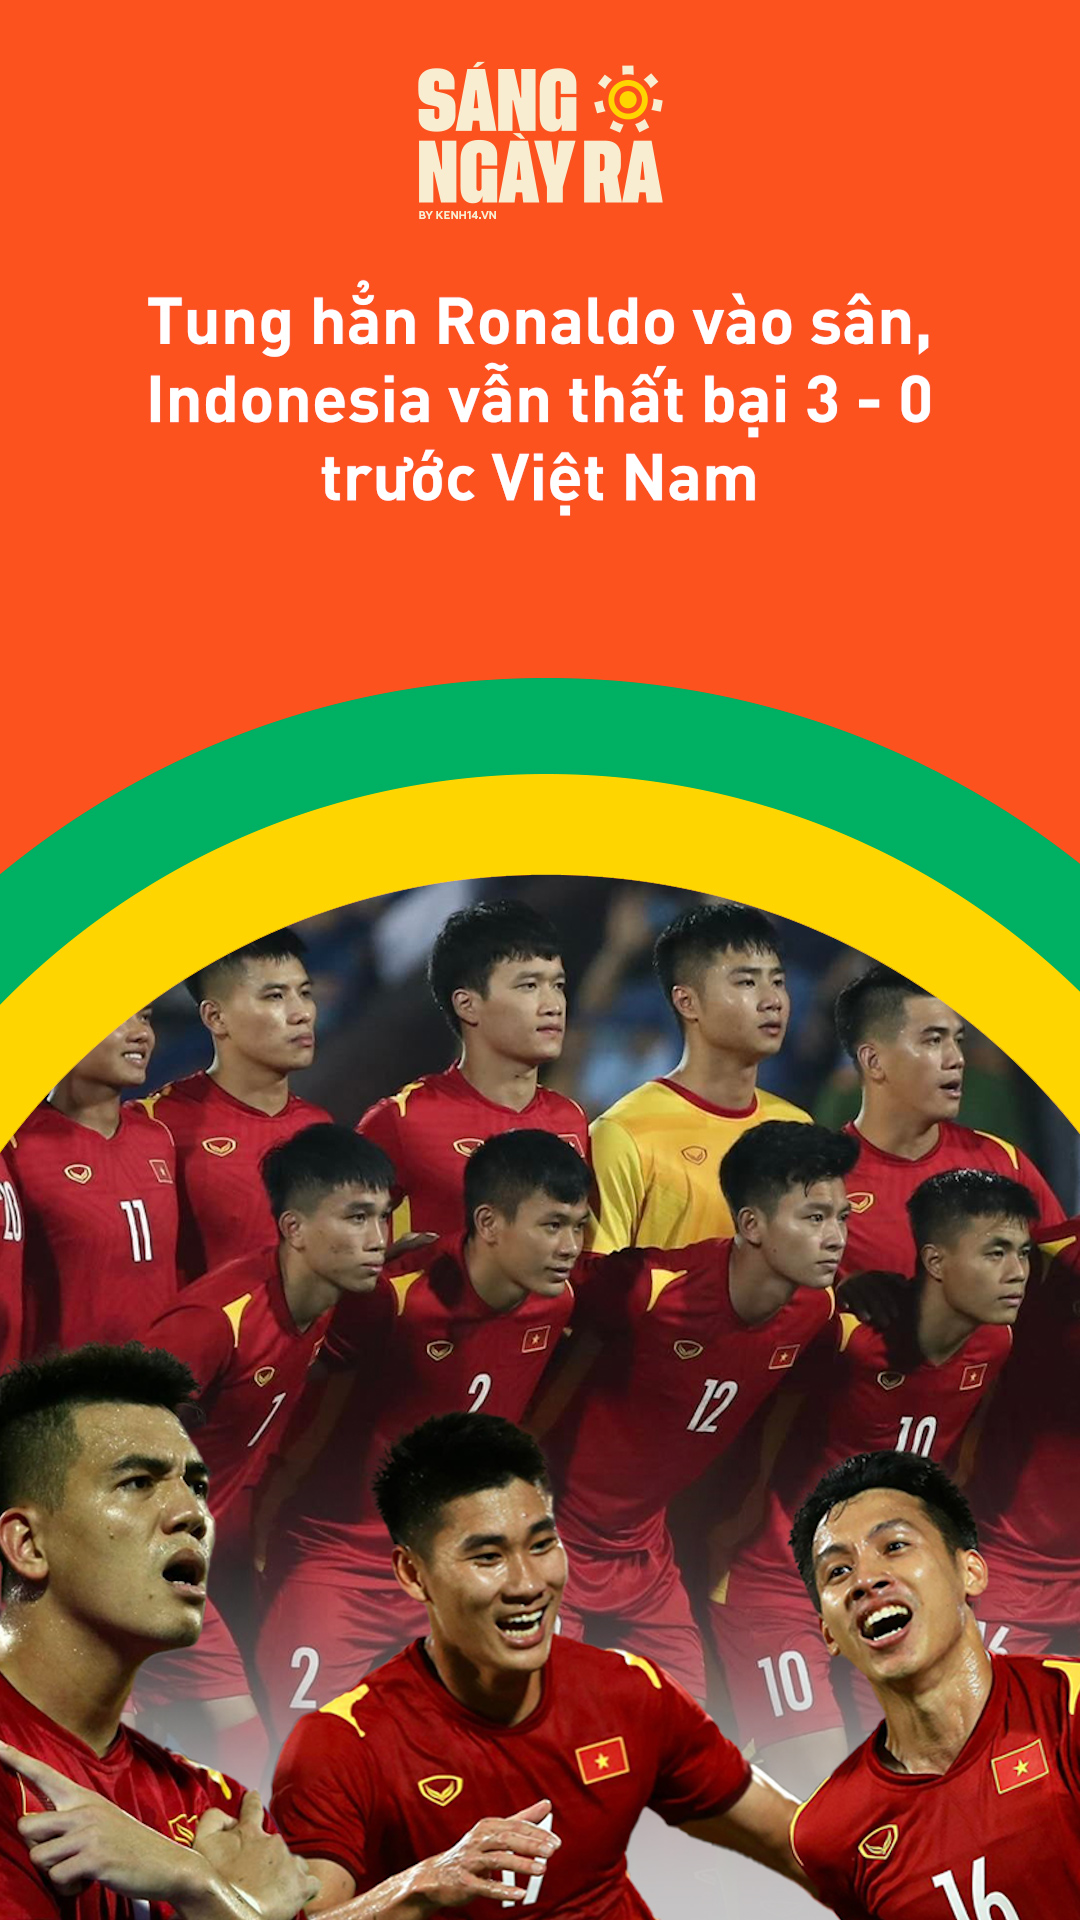 thumbnail - Sáng Ngày Ra: Tung hẳn Ronaldo vào sân, Indonesia vẫn thất bại 3 - 0 trước Việt Nam